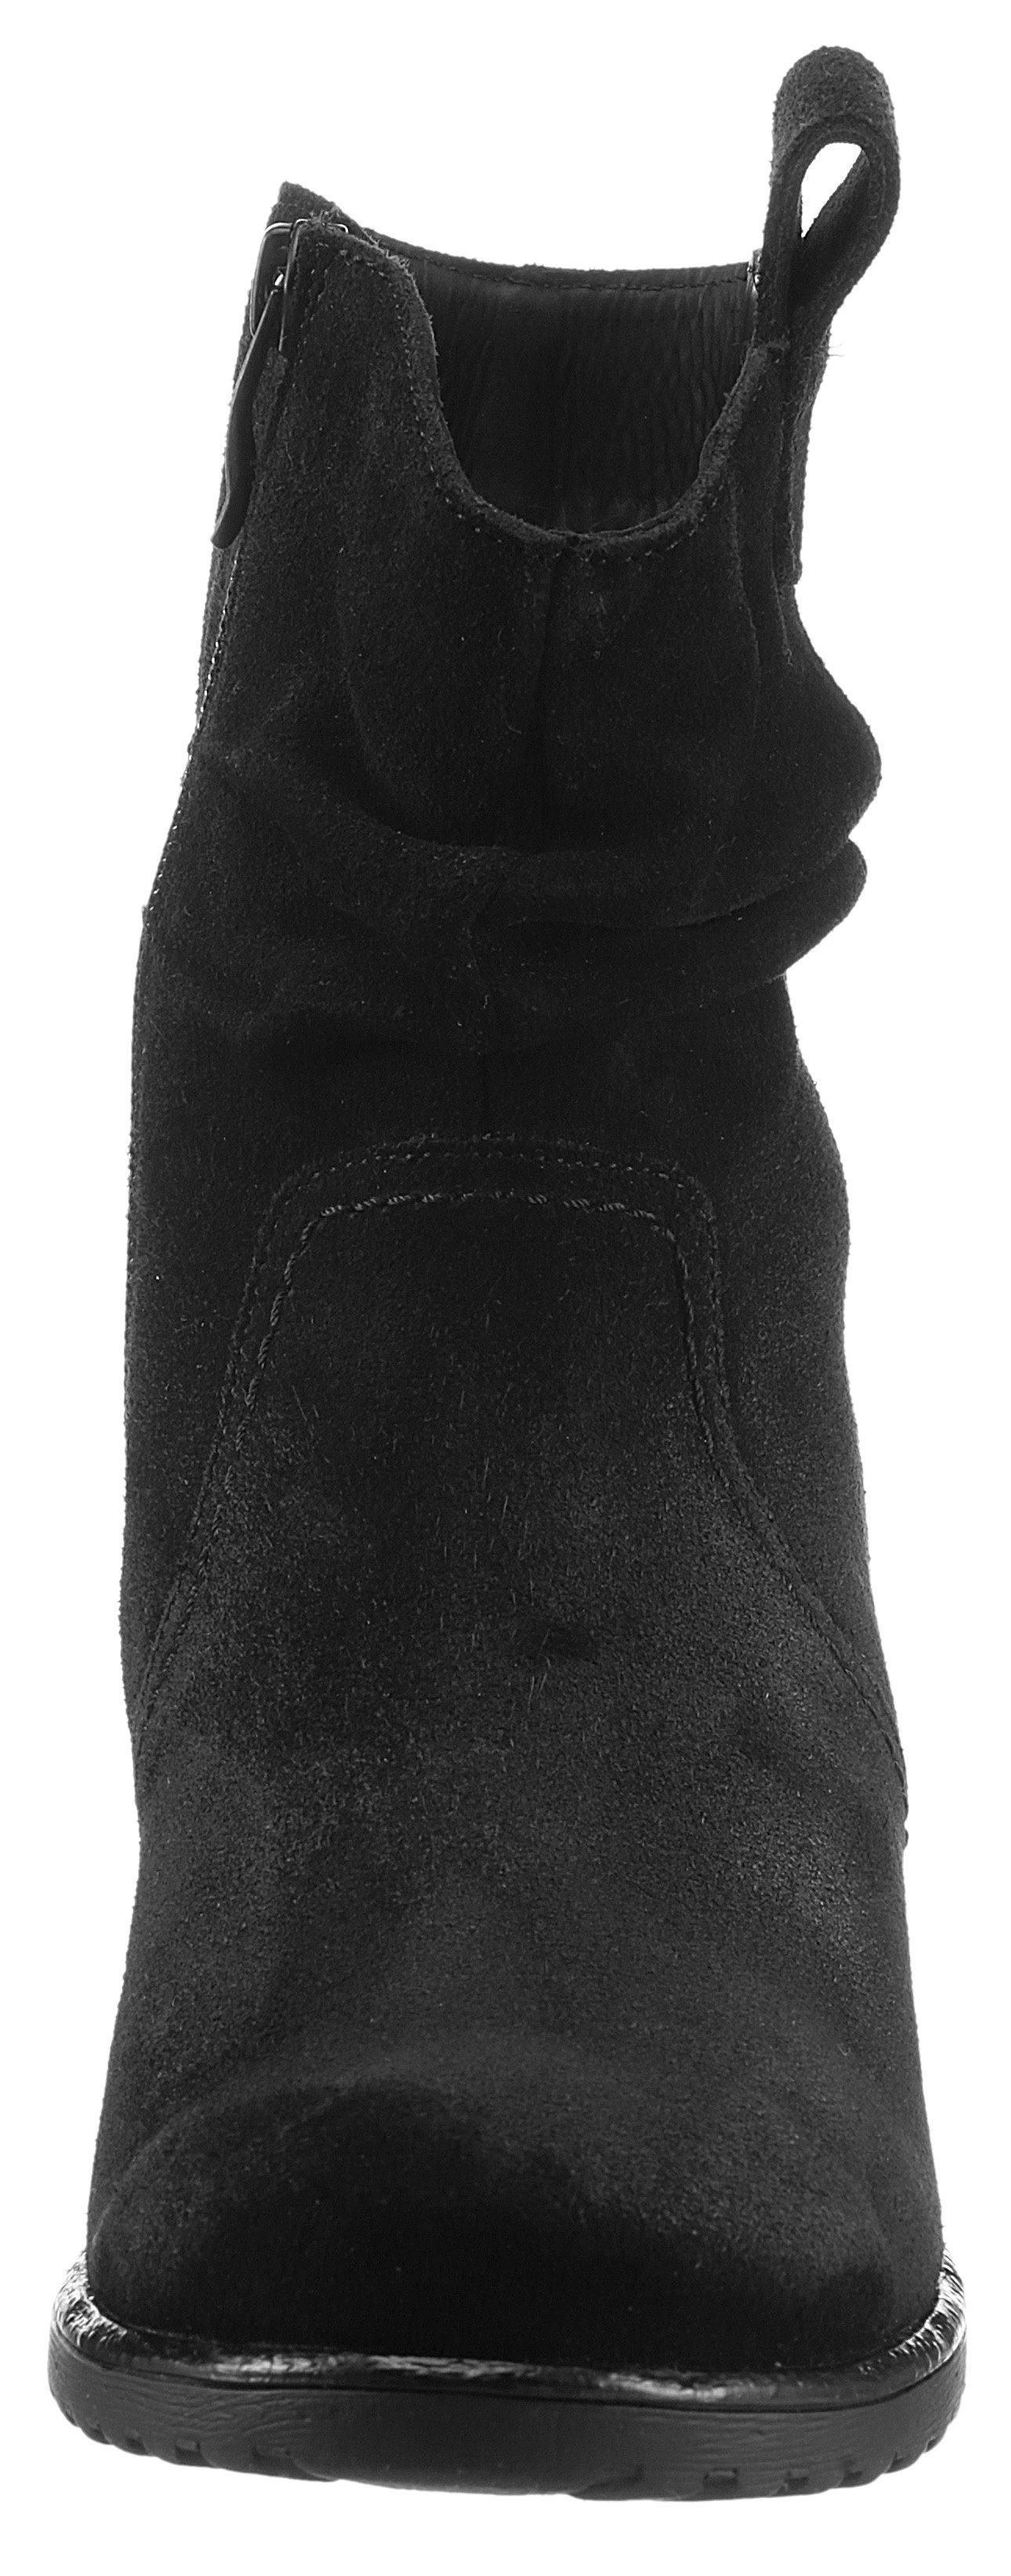 Ara LIVERPOOL Stiefelette mit slouchy-Schaft, schwarz Weite G